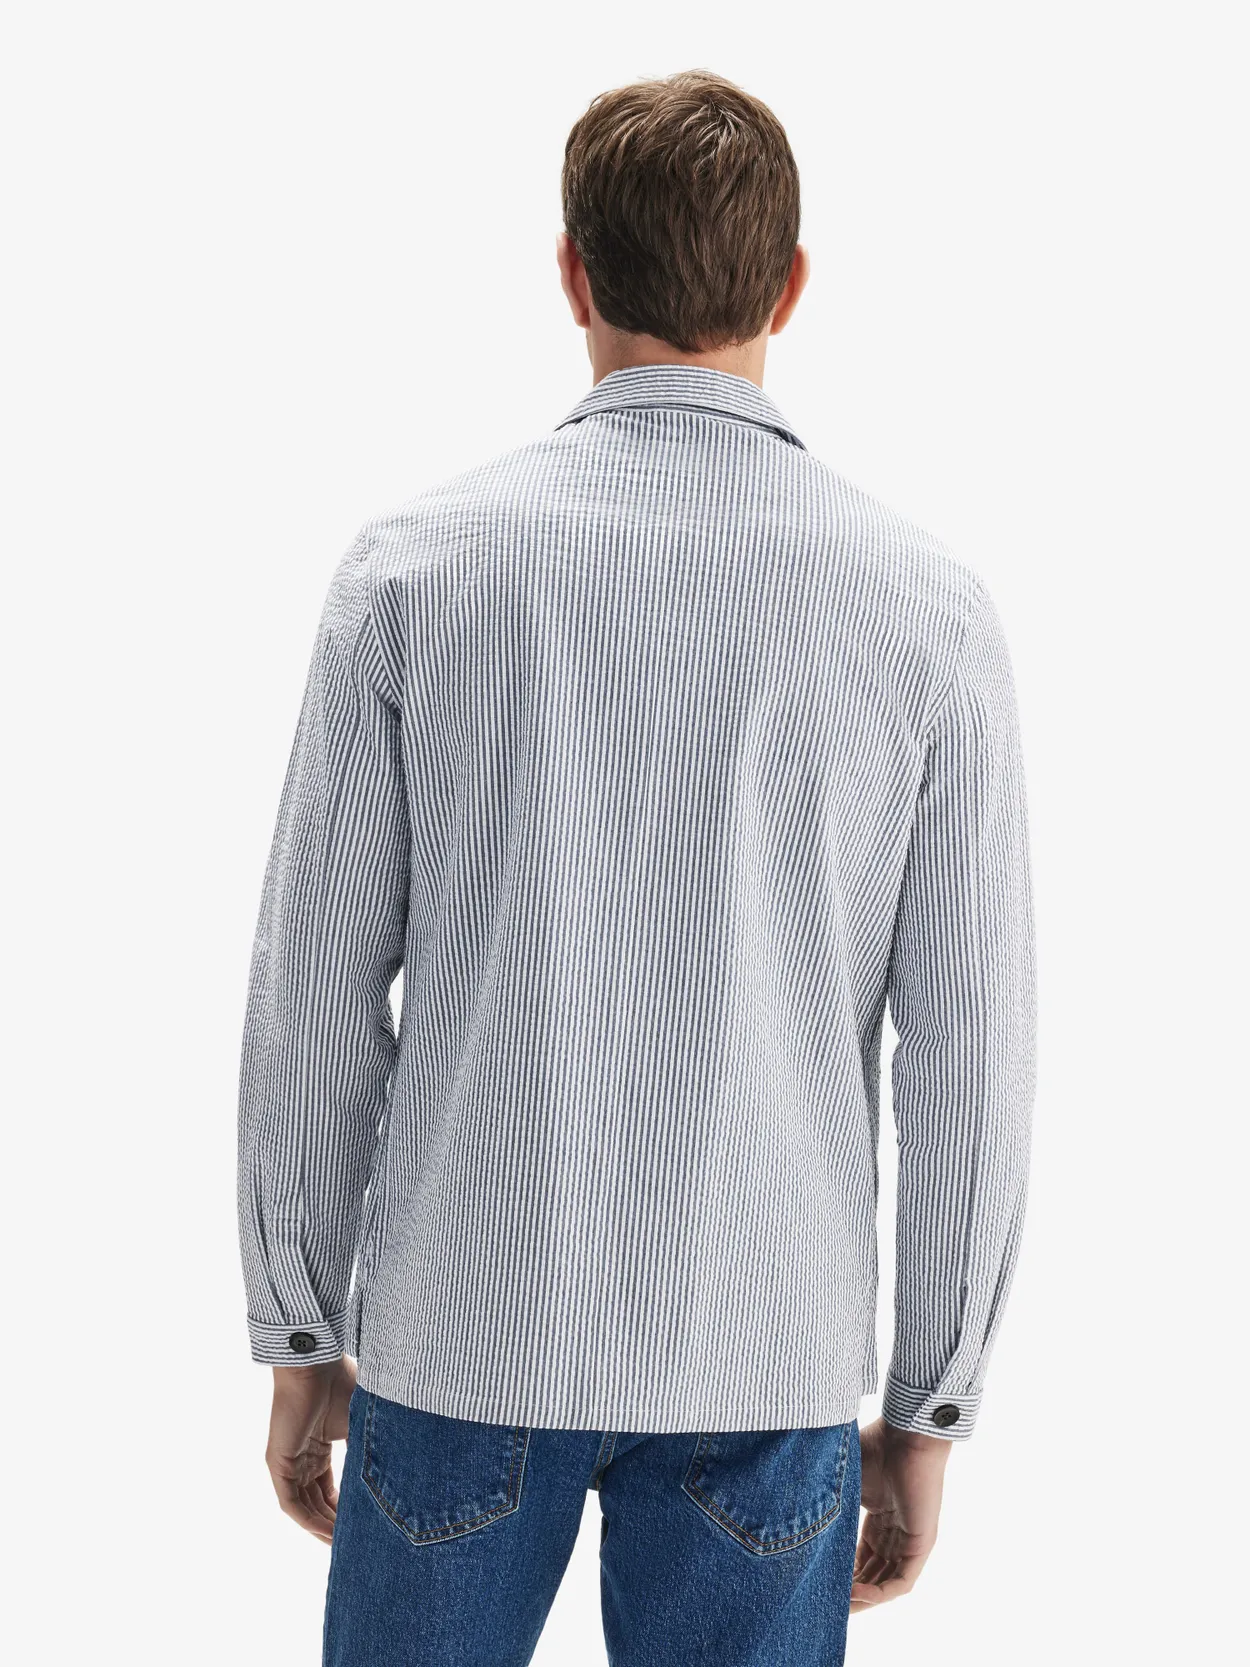 Blue & White Seersucker Shirt Jacket